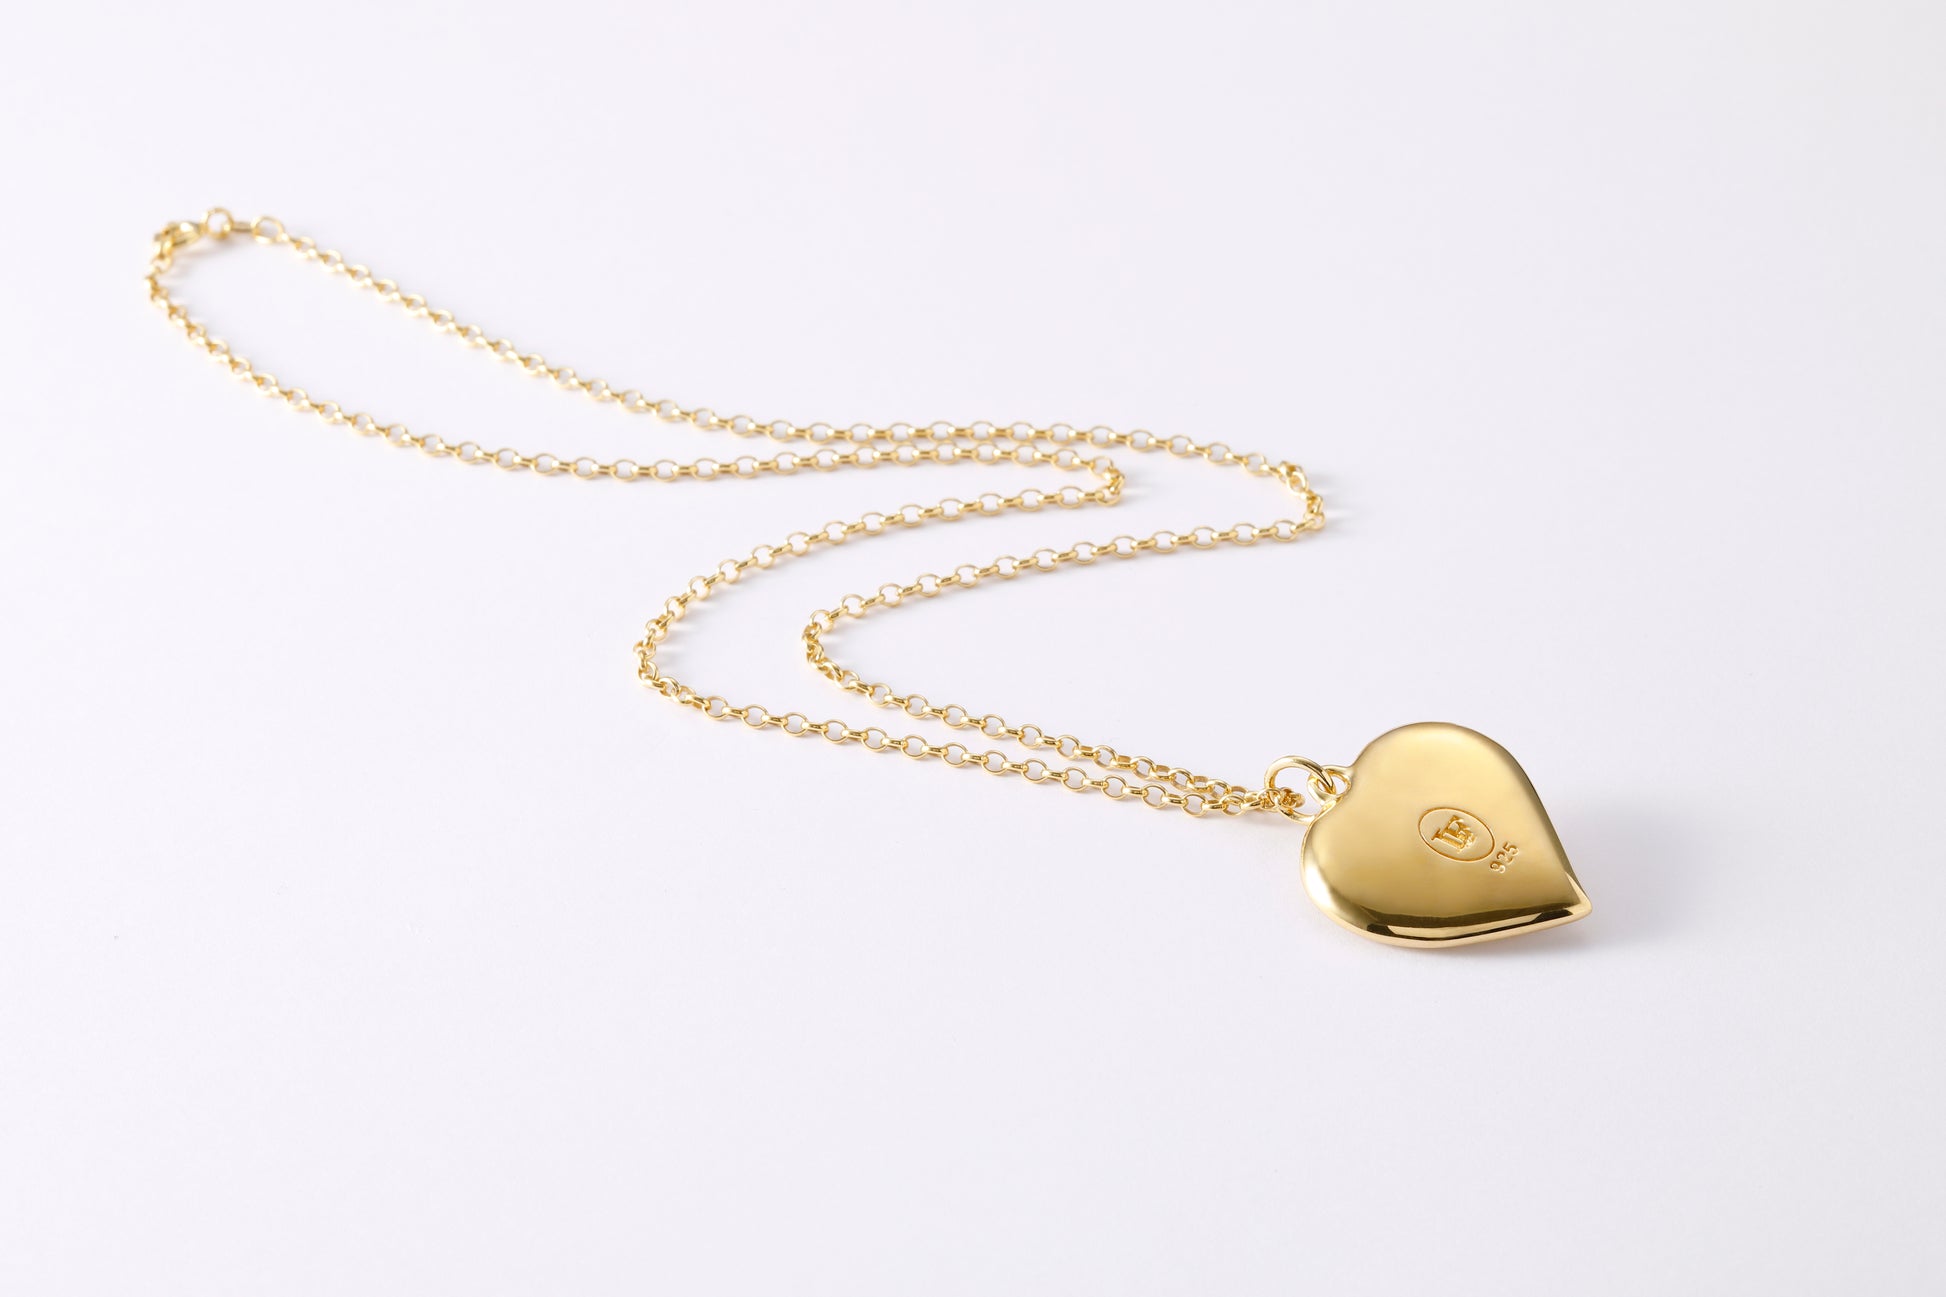 Heart Gold Necklace Glass Cabochon Swarovski Crystal